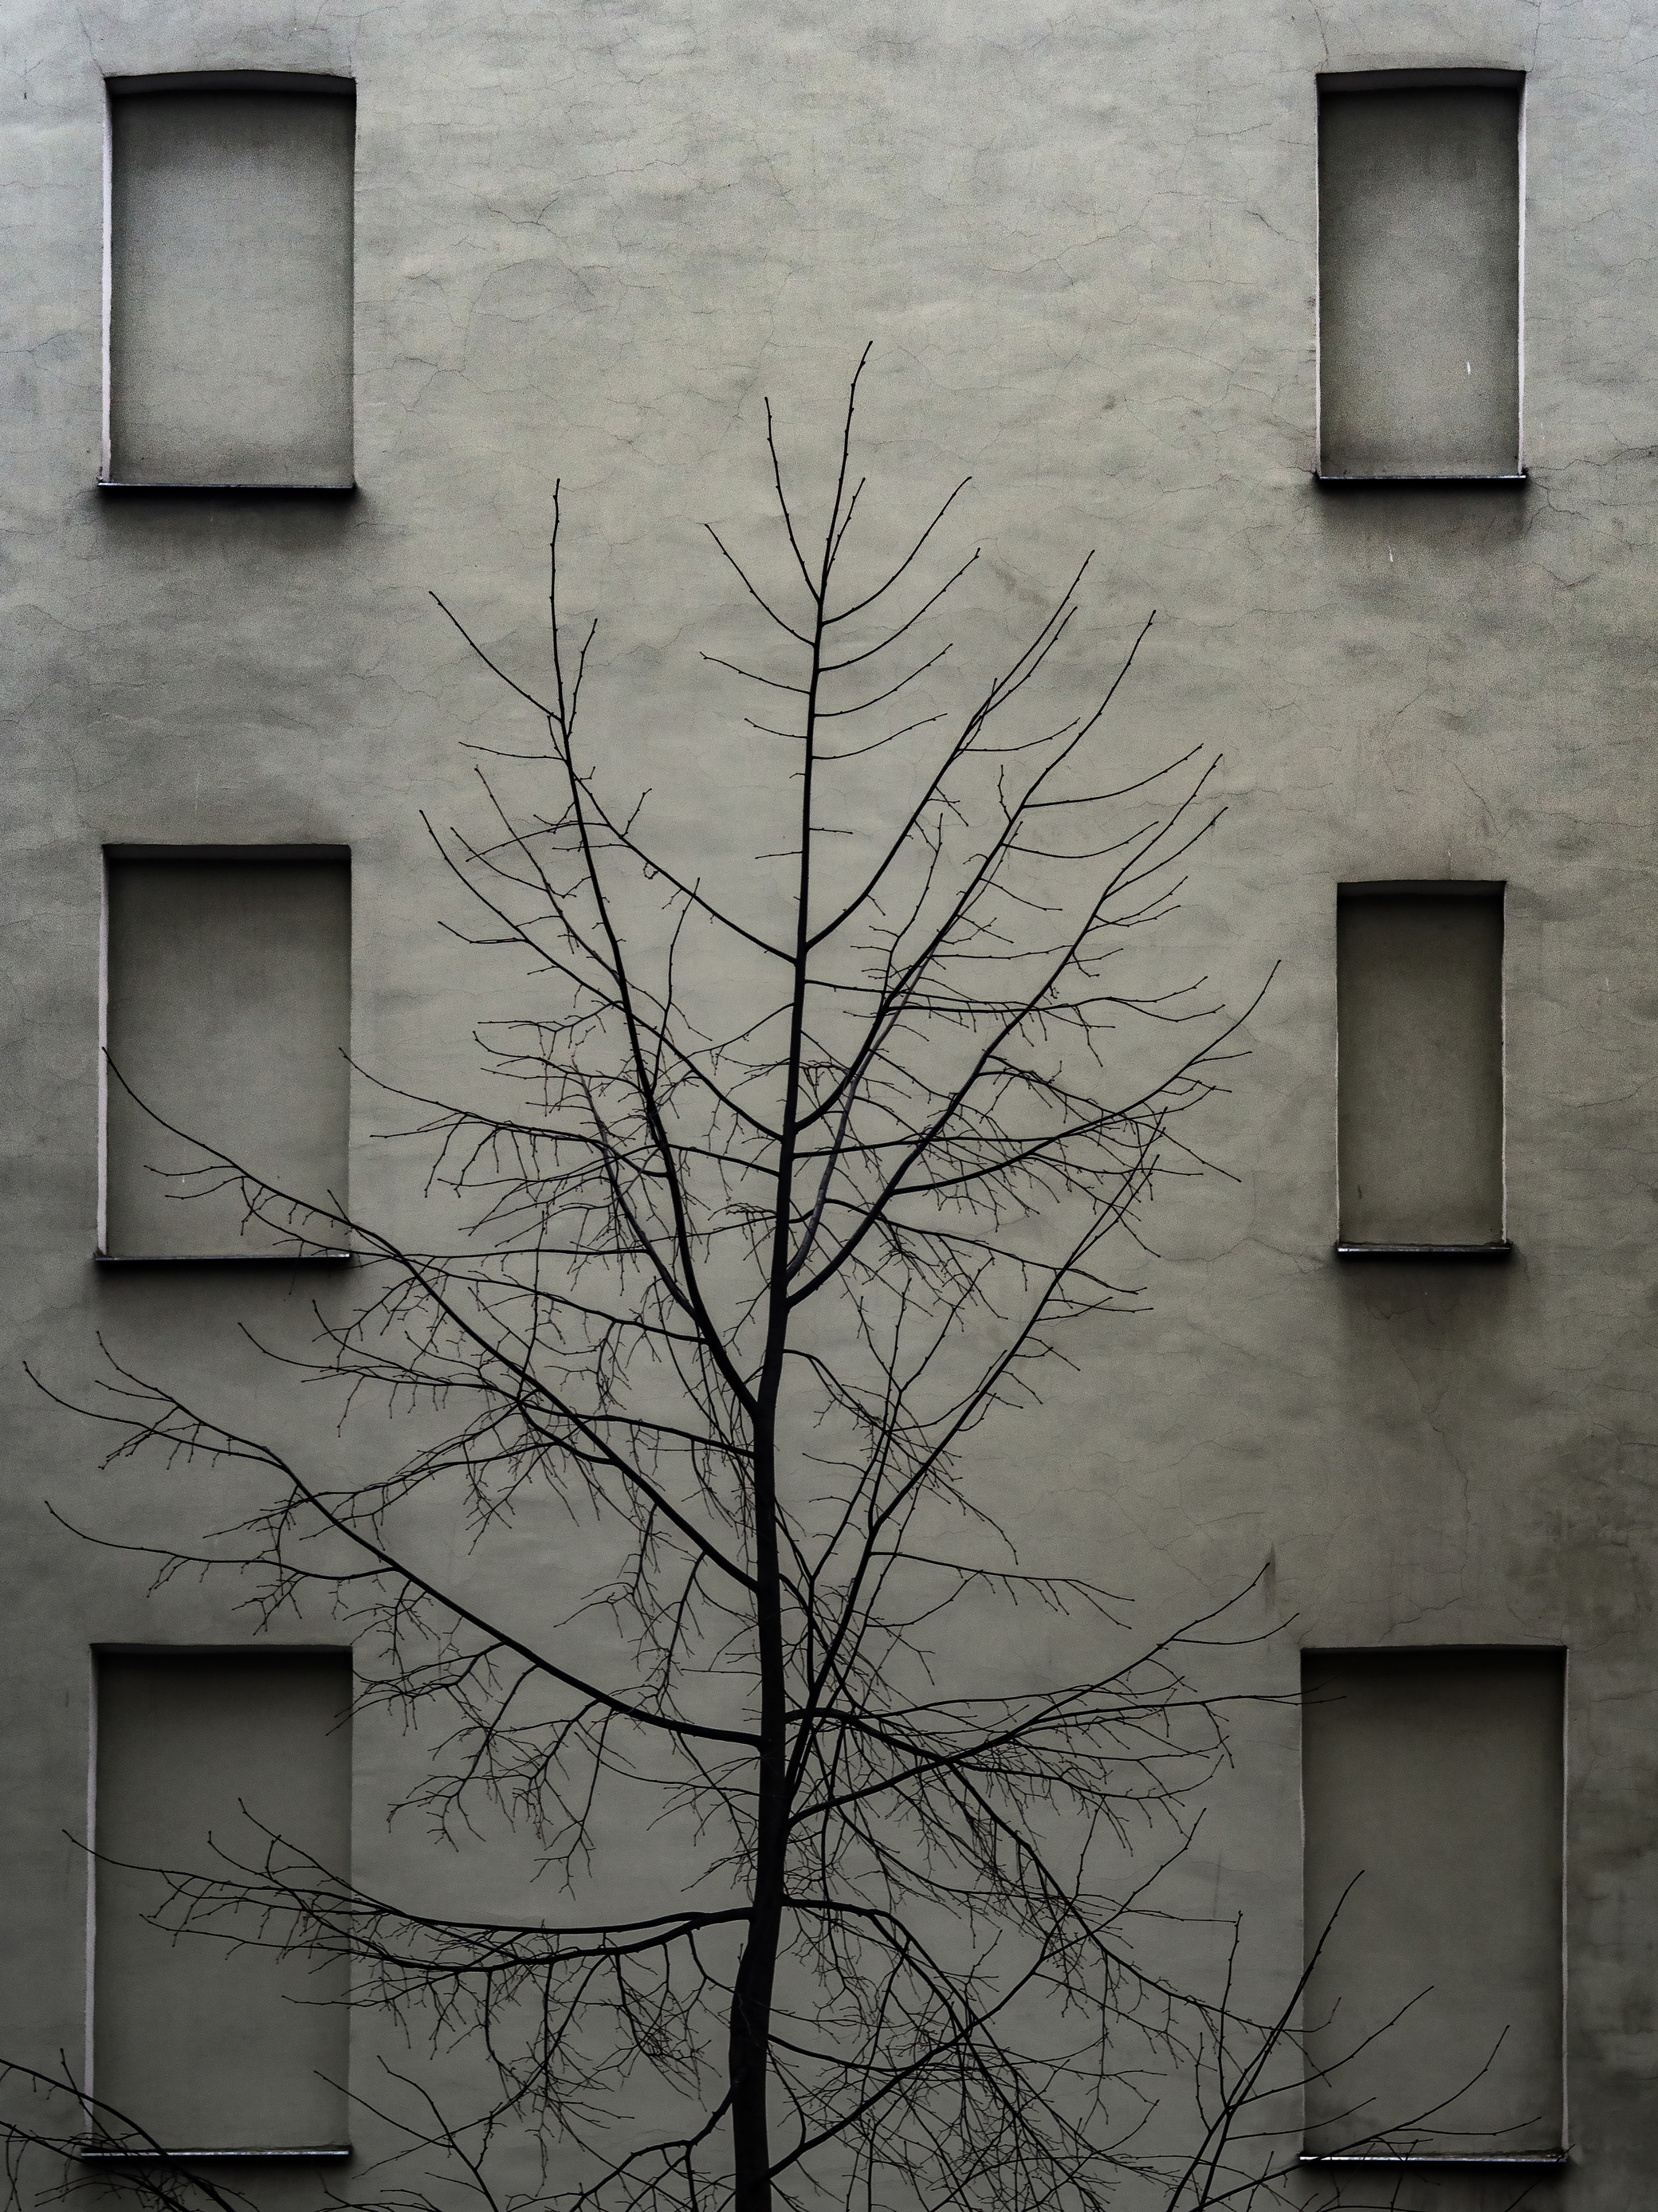 Дерево, целлюлитная стена, и шесть окон, которых нет